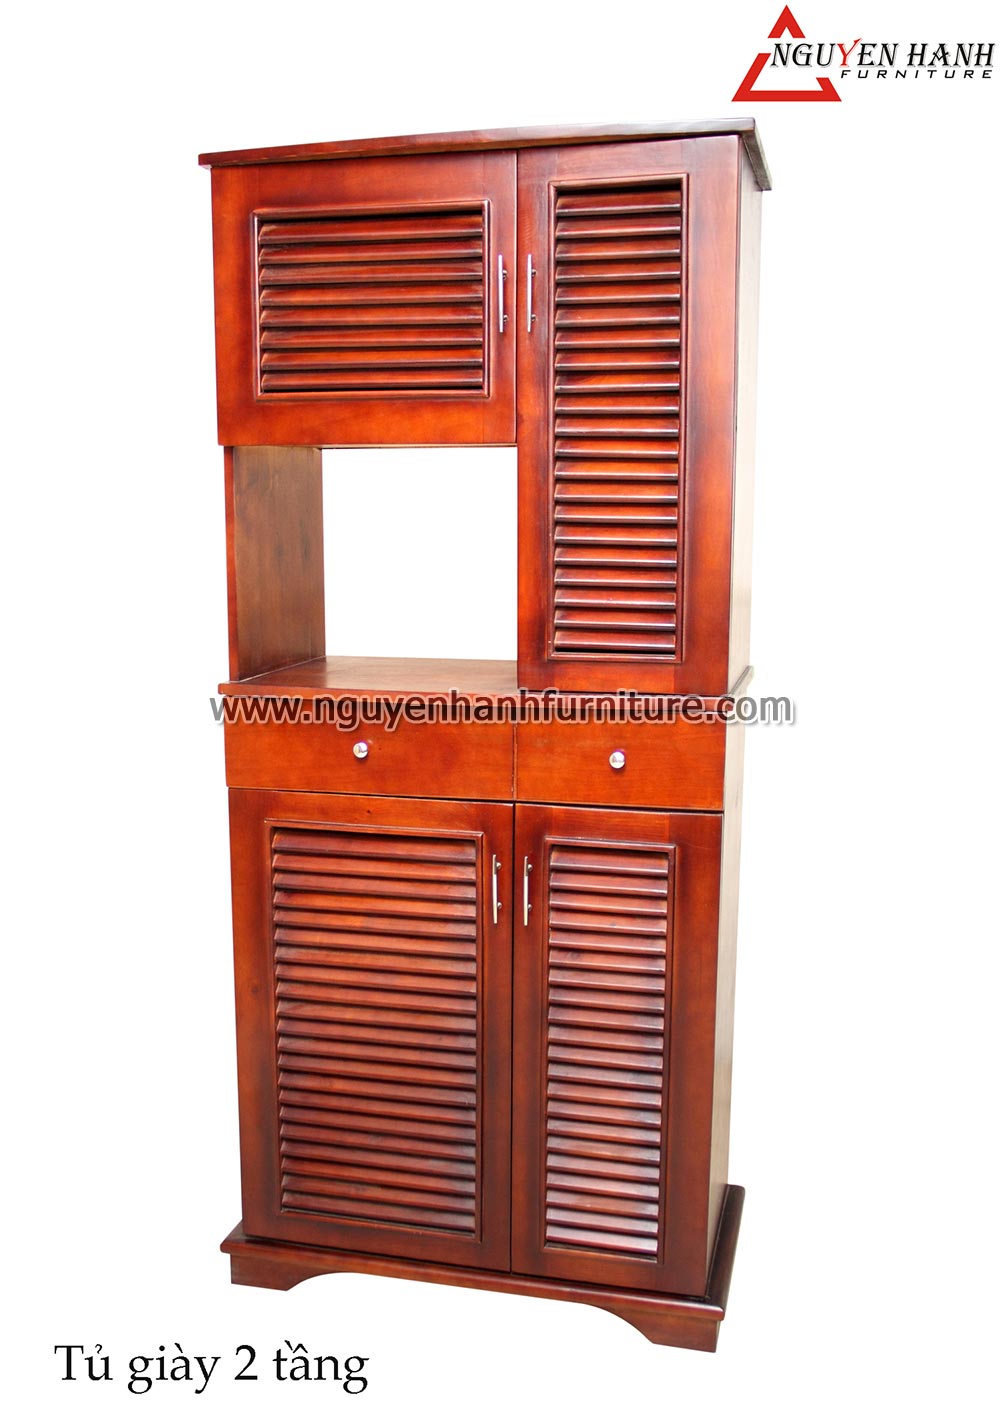 Name product: Double-storey Shoe Cabinet- Dimensions: 45 x 82 x 190cm - Description: Wood natural rubber